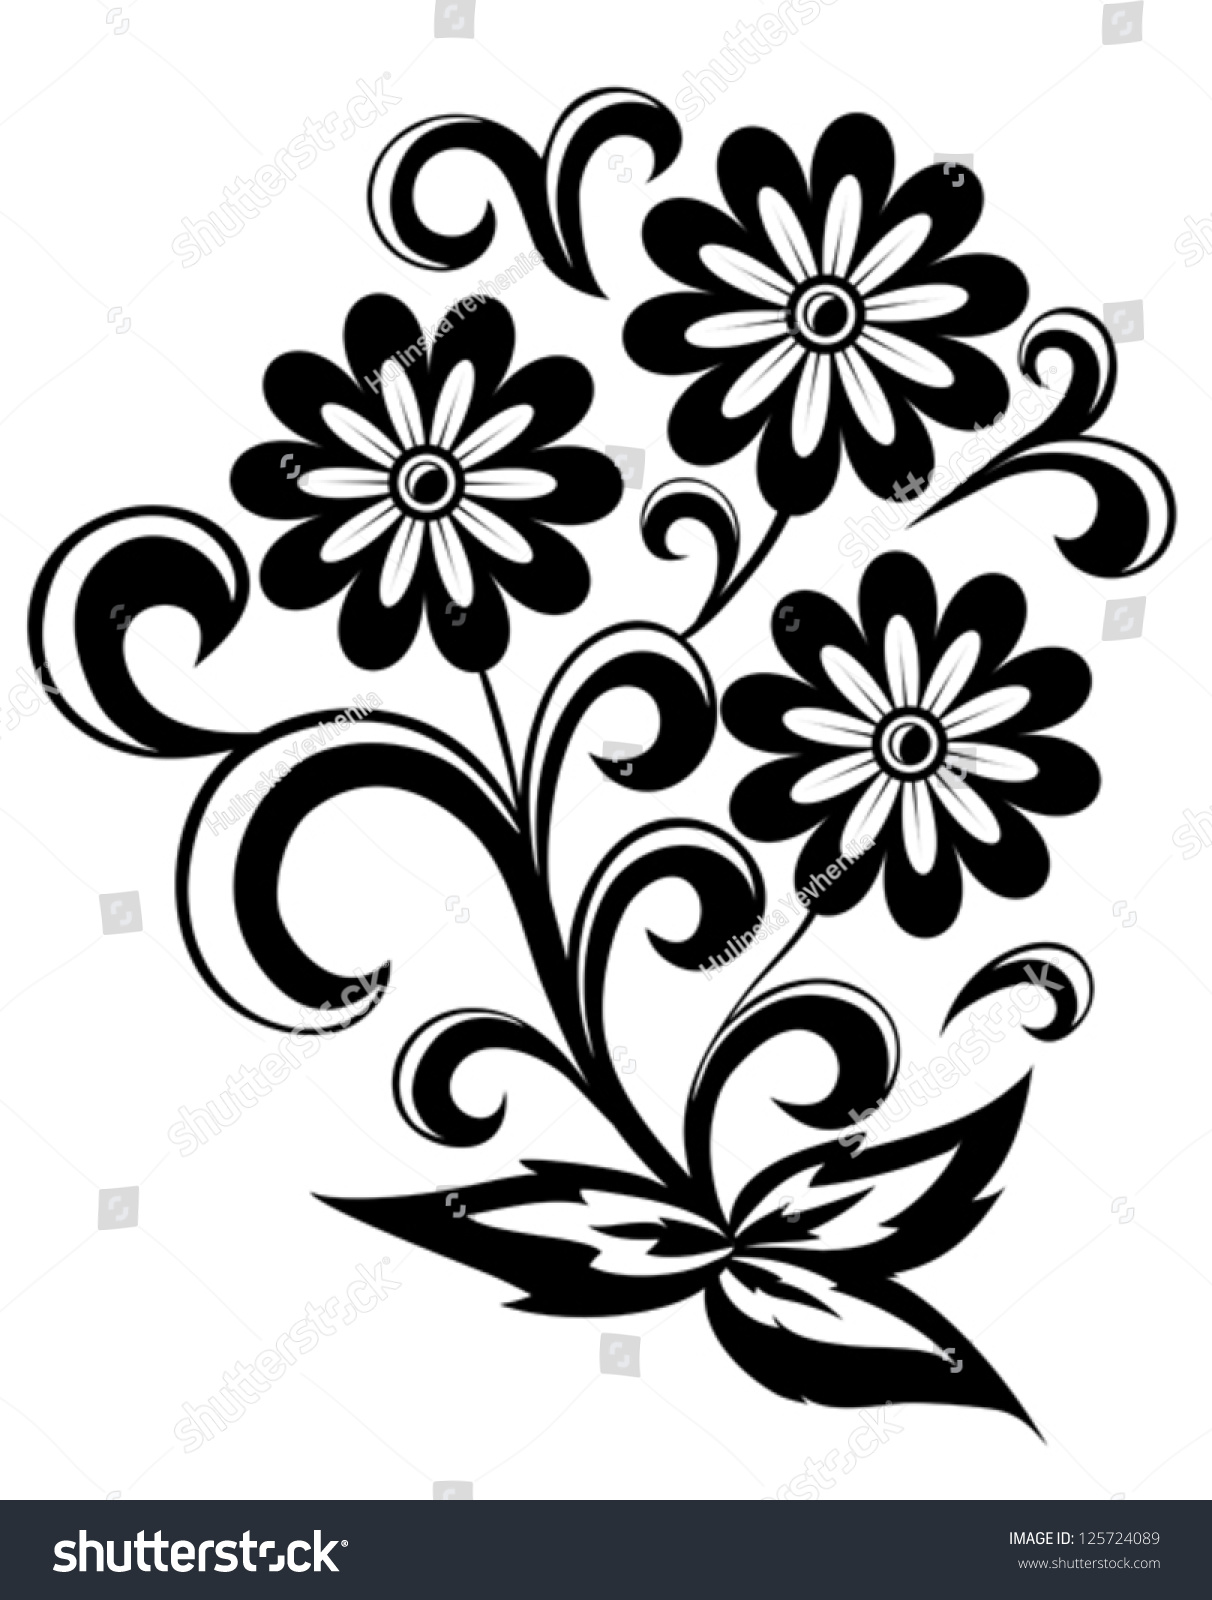 Black White Abstract Flower Leaves Swirls Stock Vector 125724089 ...